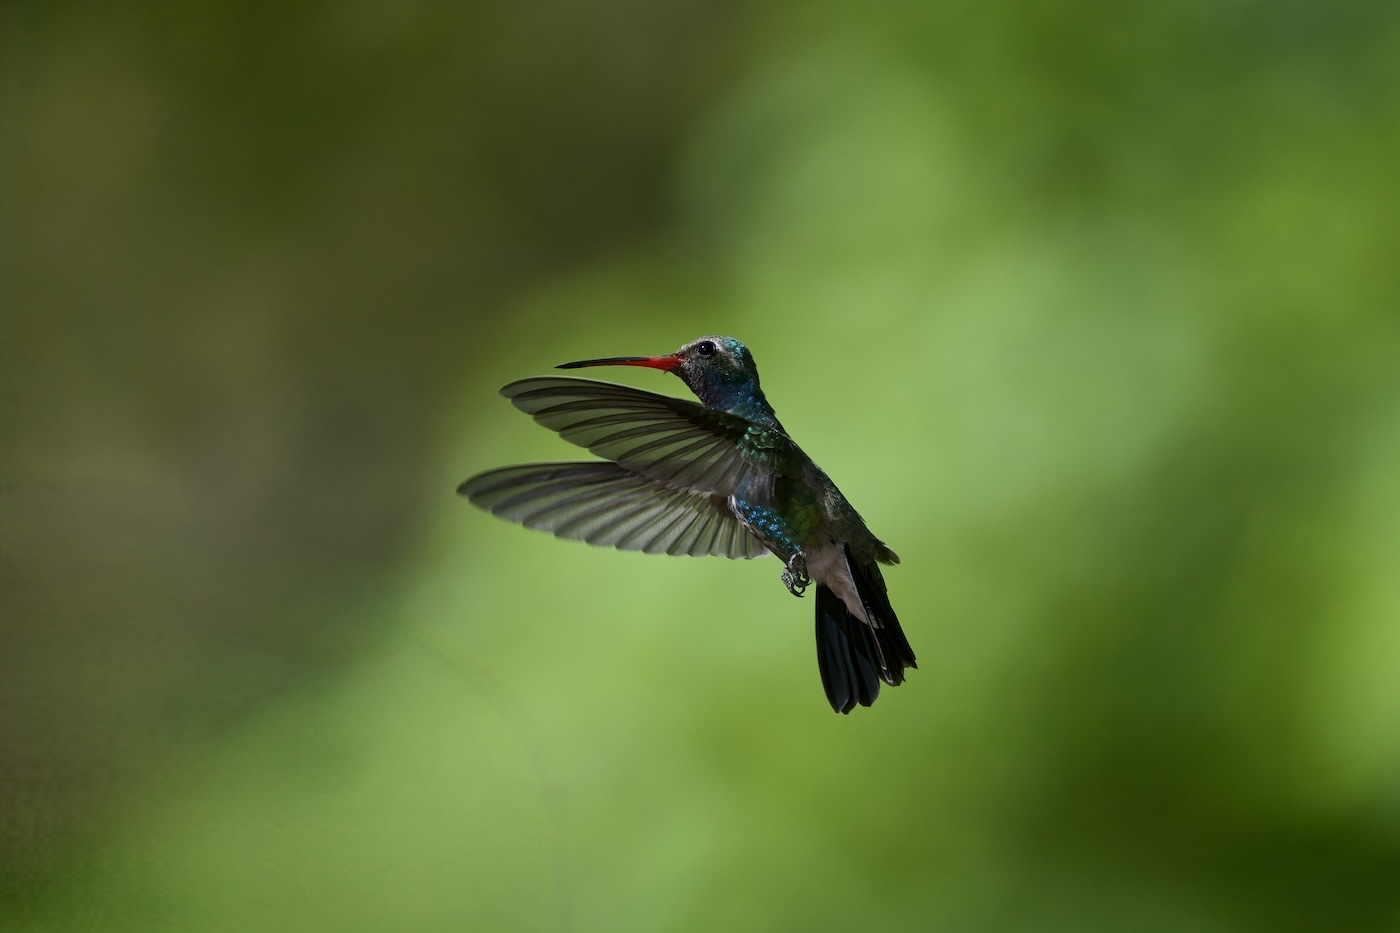 broad-billed hummingbird.jpeg